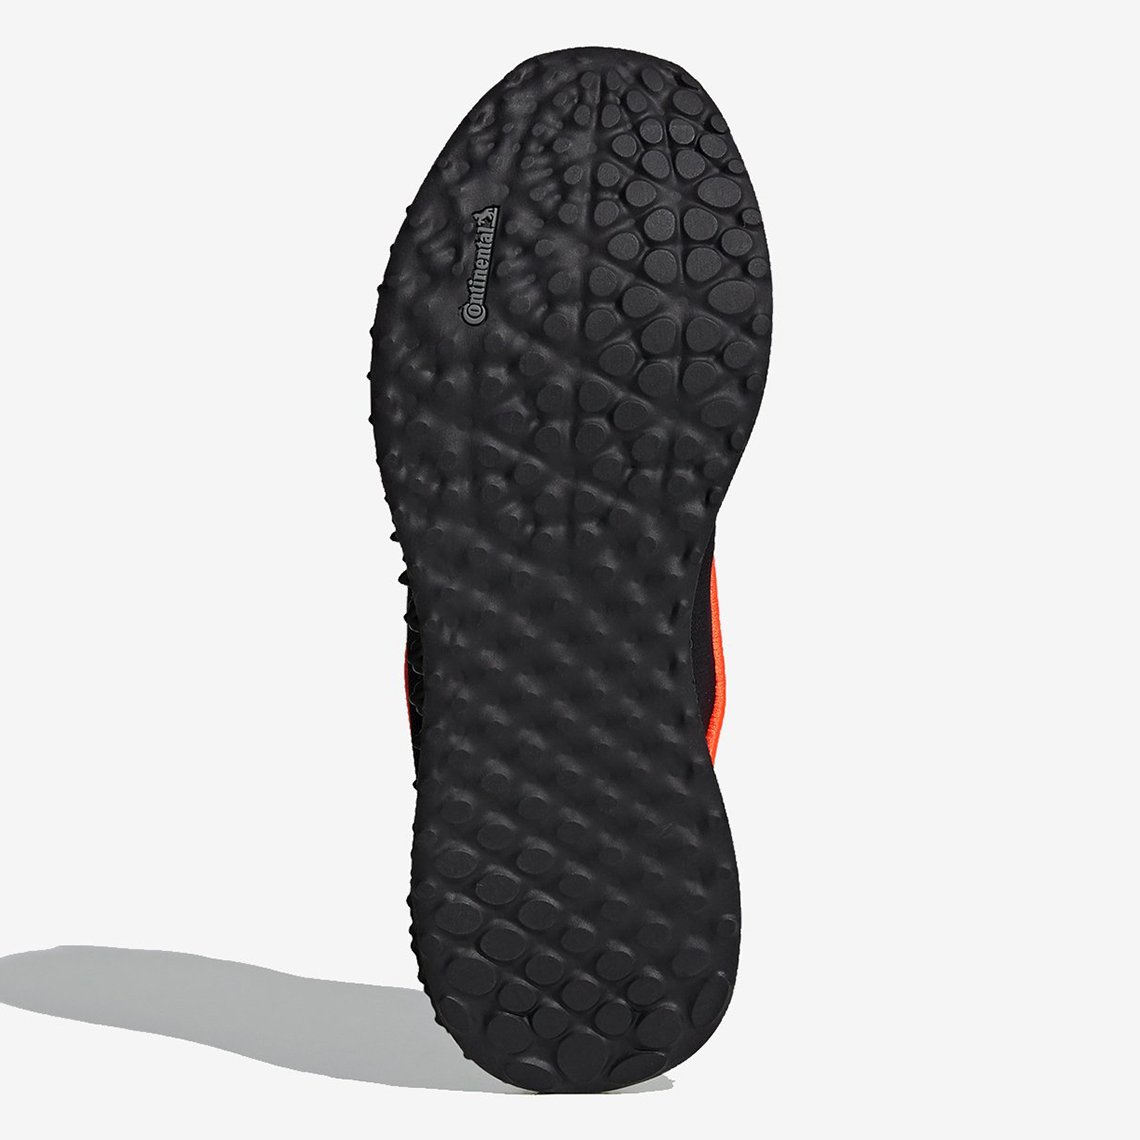 Adidas Y 3 Runner 4d Fu9208 Black Orange Release Date 4